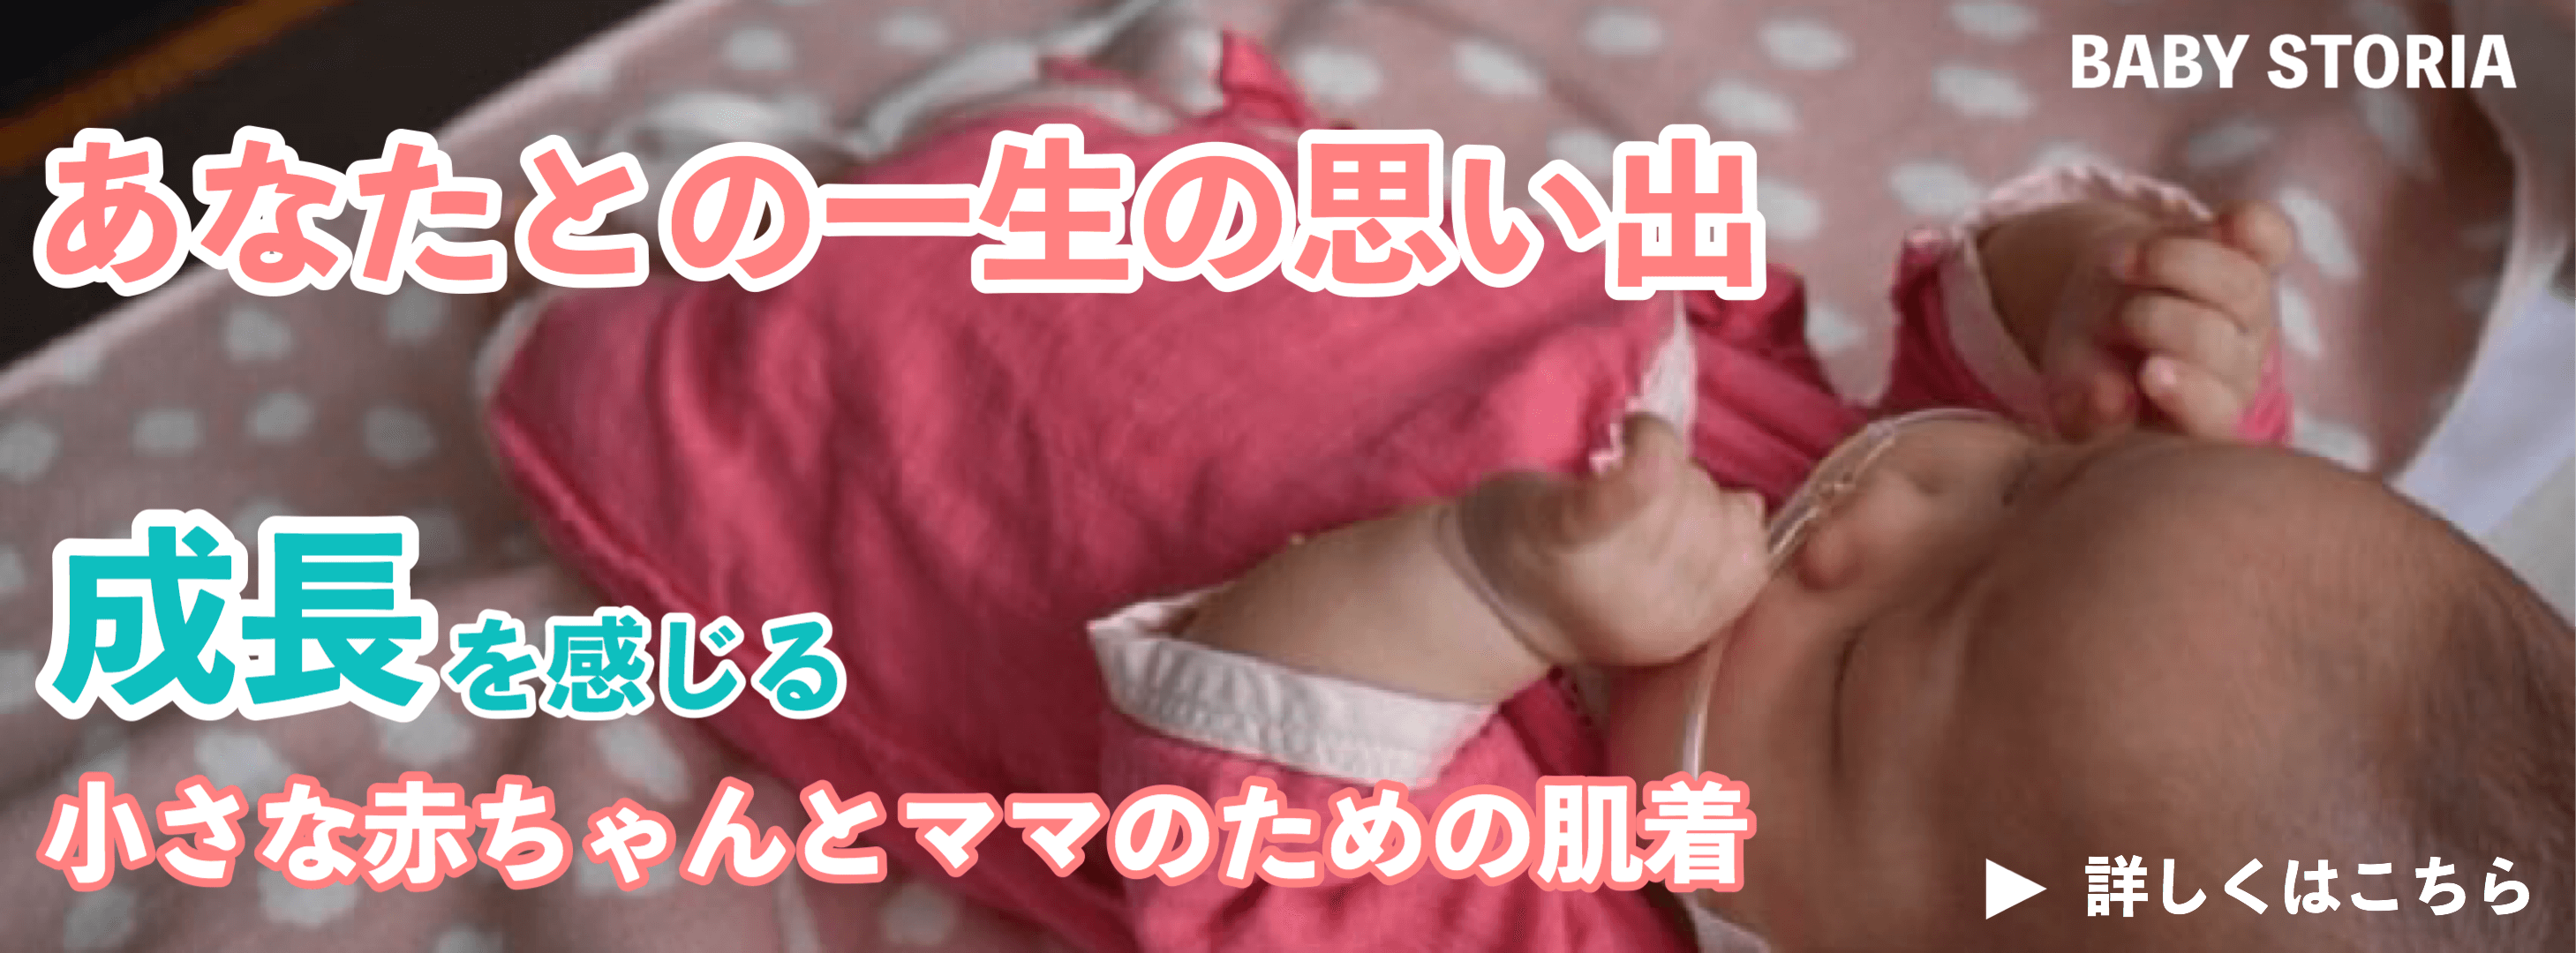 低出生体重児（未熟児）や早産で生まれた小さな赤ちゃんとNICUで過ごすママのために赤ちゃんの成長を感じられる肌着の通販サイト